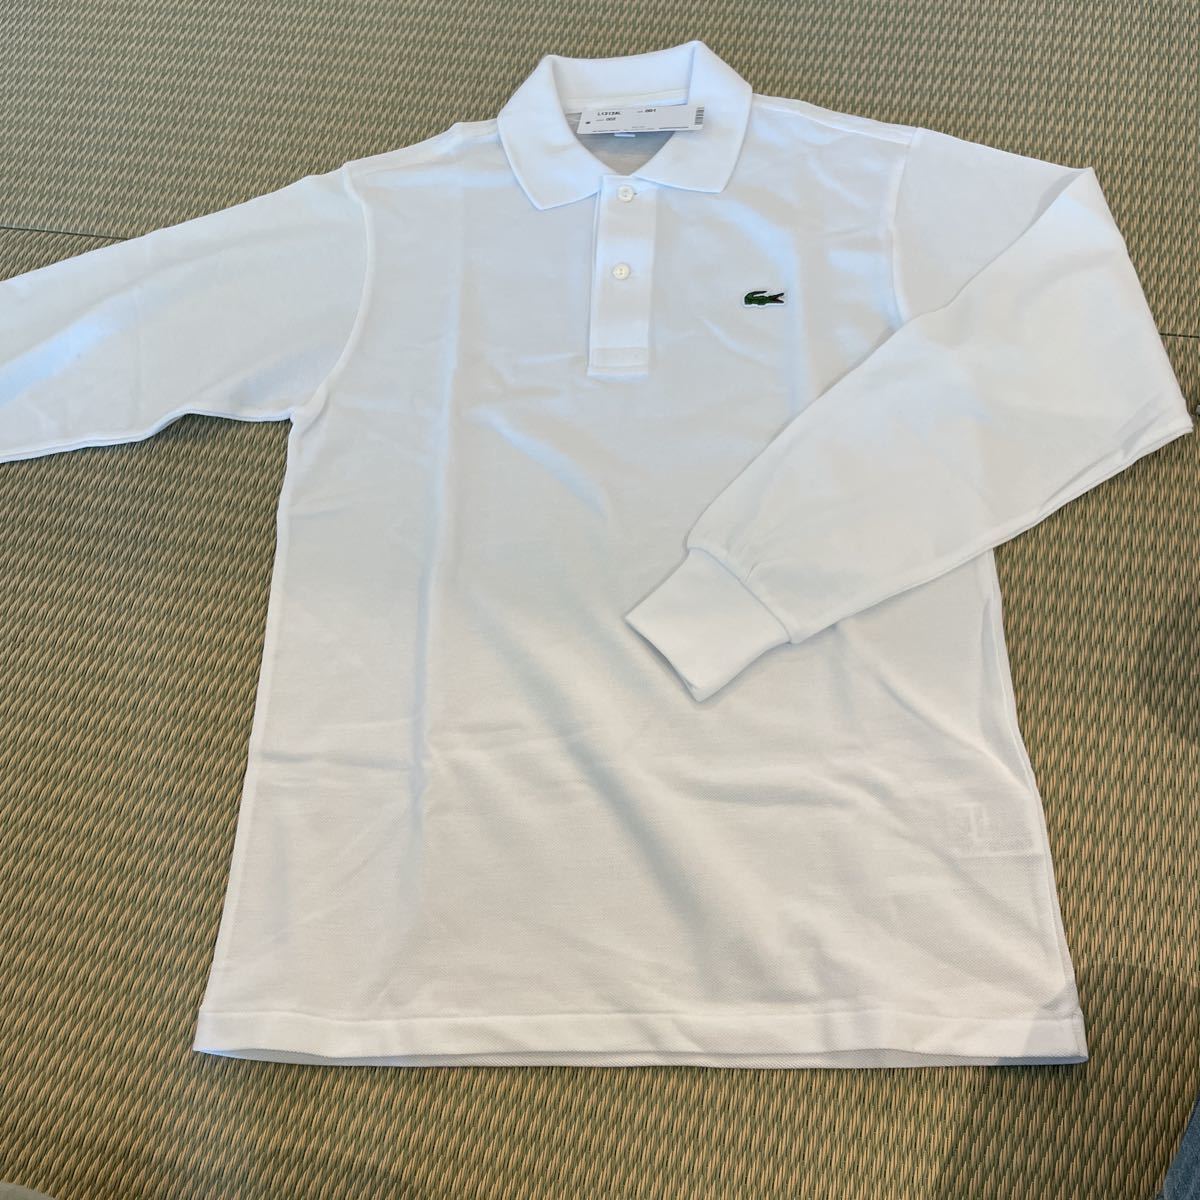 ラコステ 長袖ポロシャツ classic fit 白 XSサイズ 未使用新品 定価